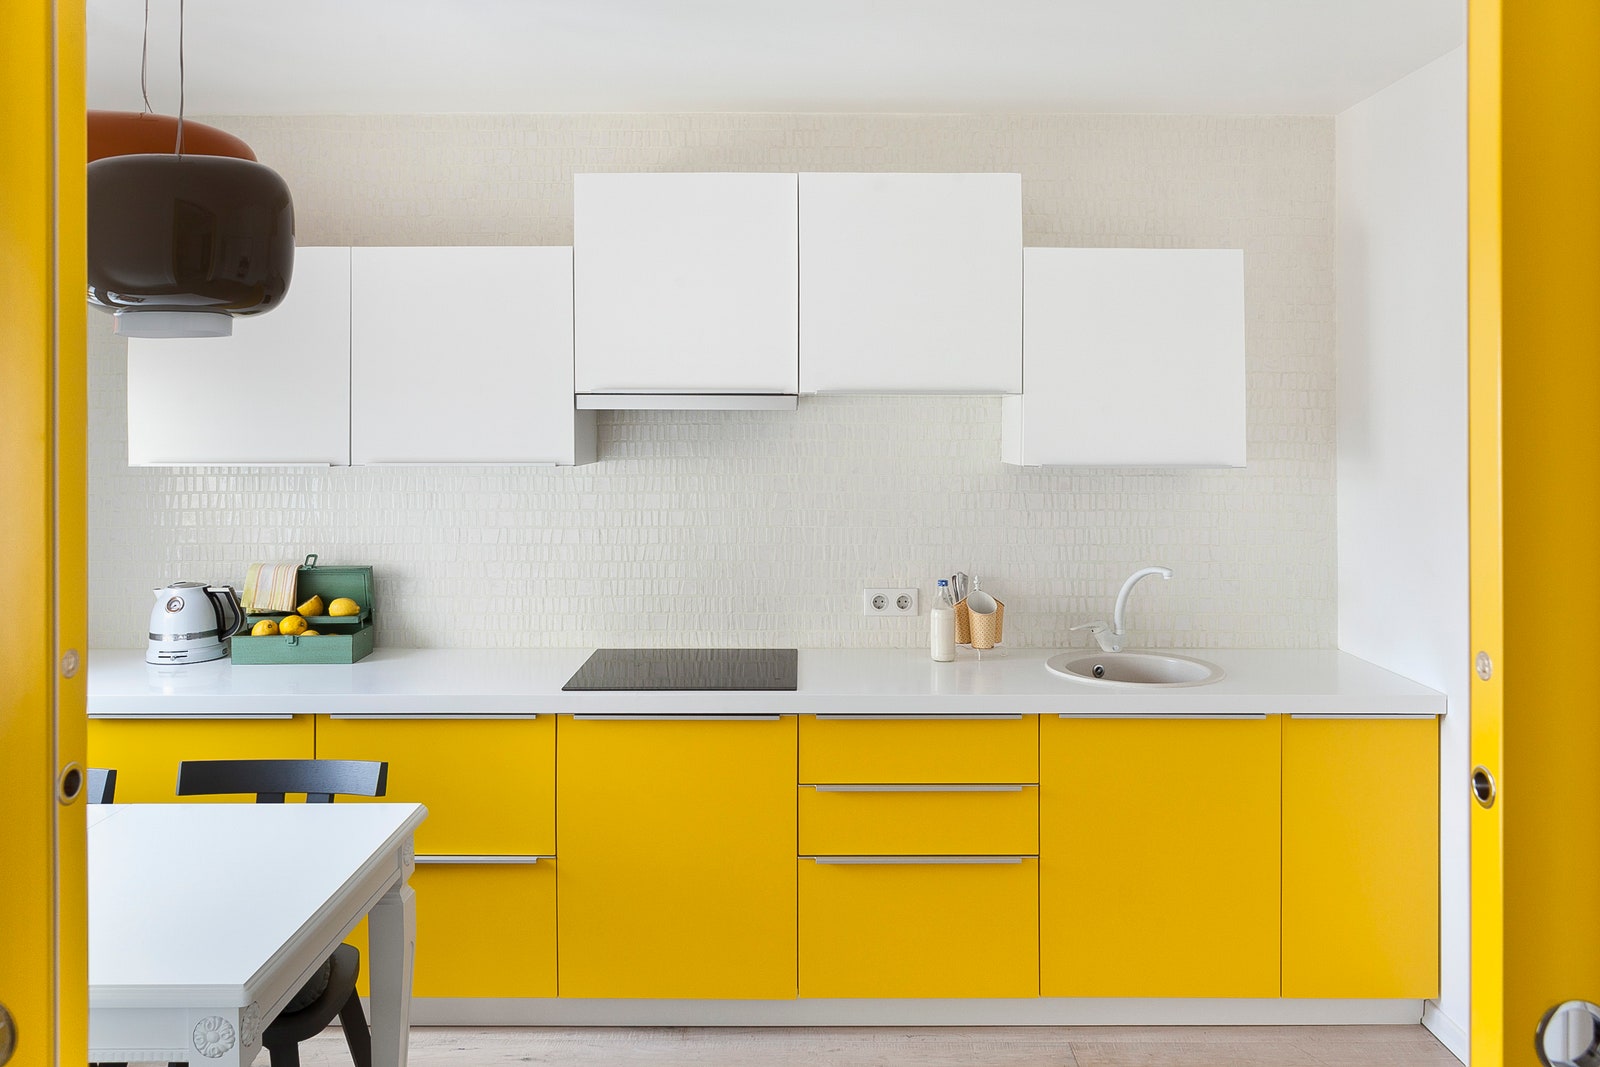 Фрагмент интерьера кухни в квартире по проекту Enjoy Home.